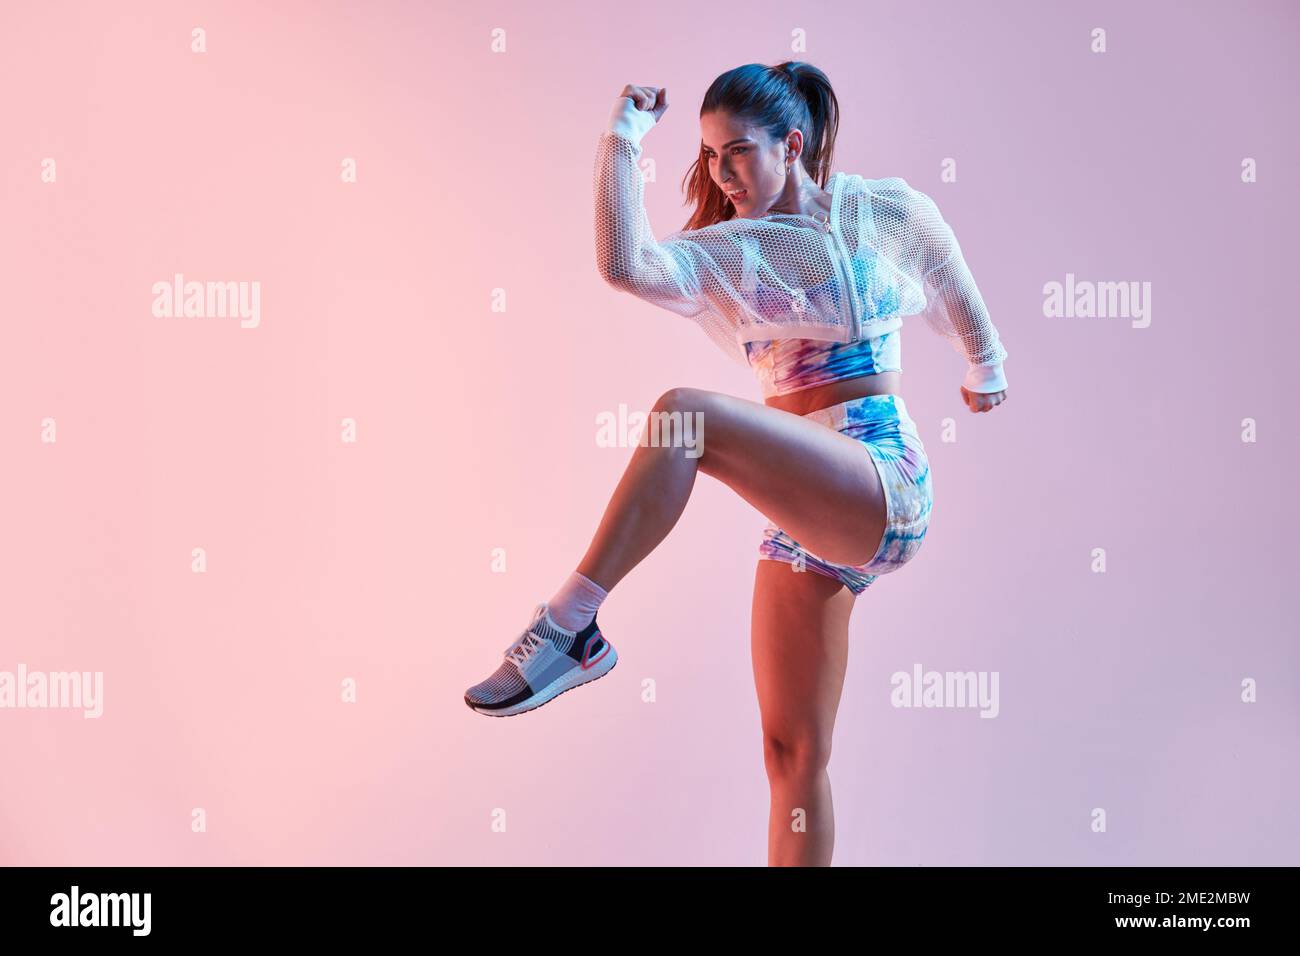 Blick auf eine fit junge Frau mit farbenfrohem Oberteil und Shorts, die hoch springen, mit erhobenem Bein und Arm an der rosa Wand im Studio Stockfoto